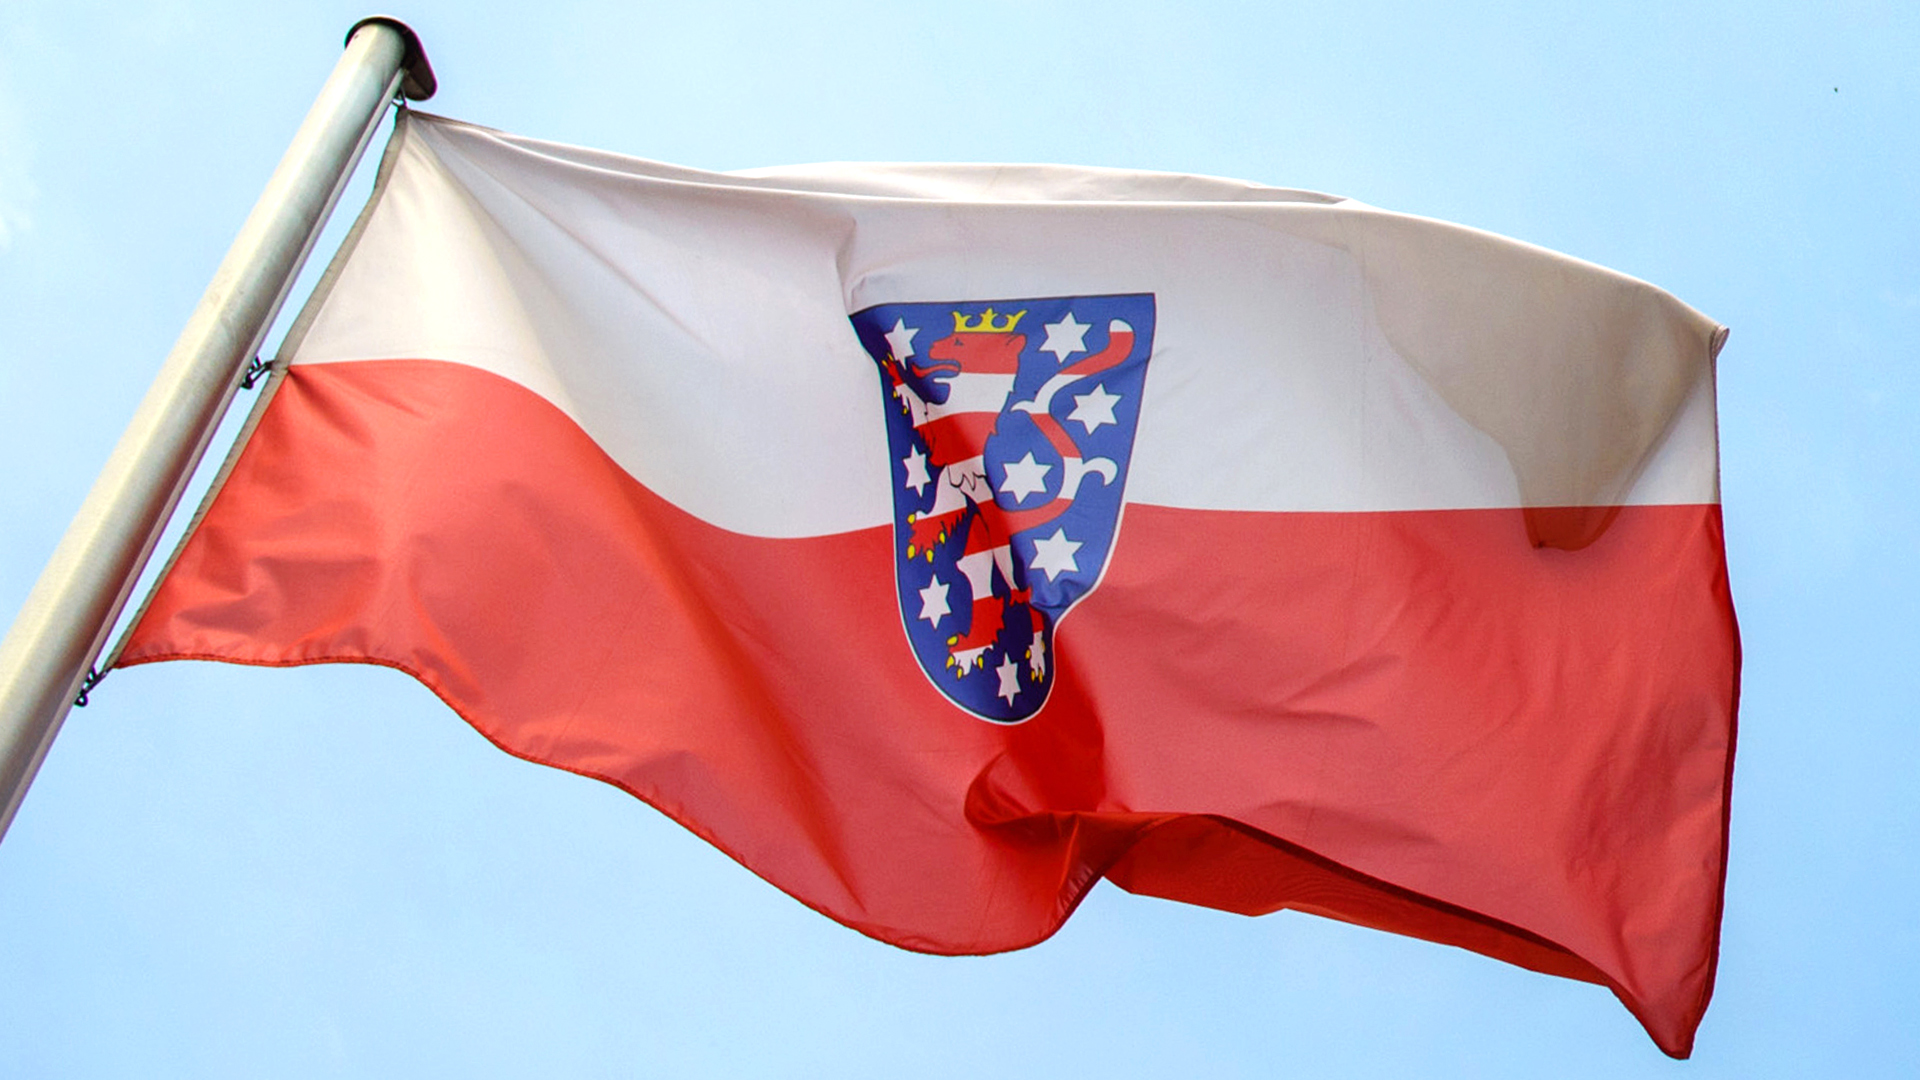 Fahne des Bundeslandes Thüringen | picture alliance/dpa